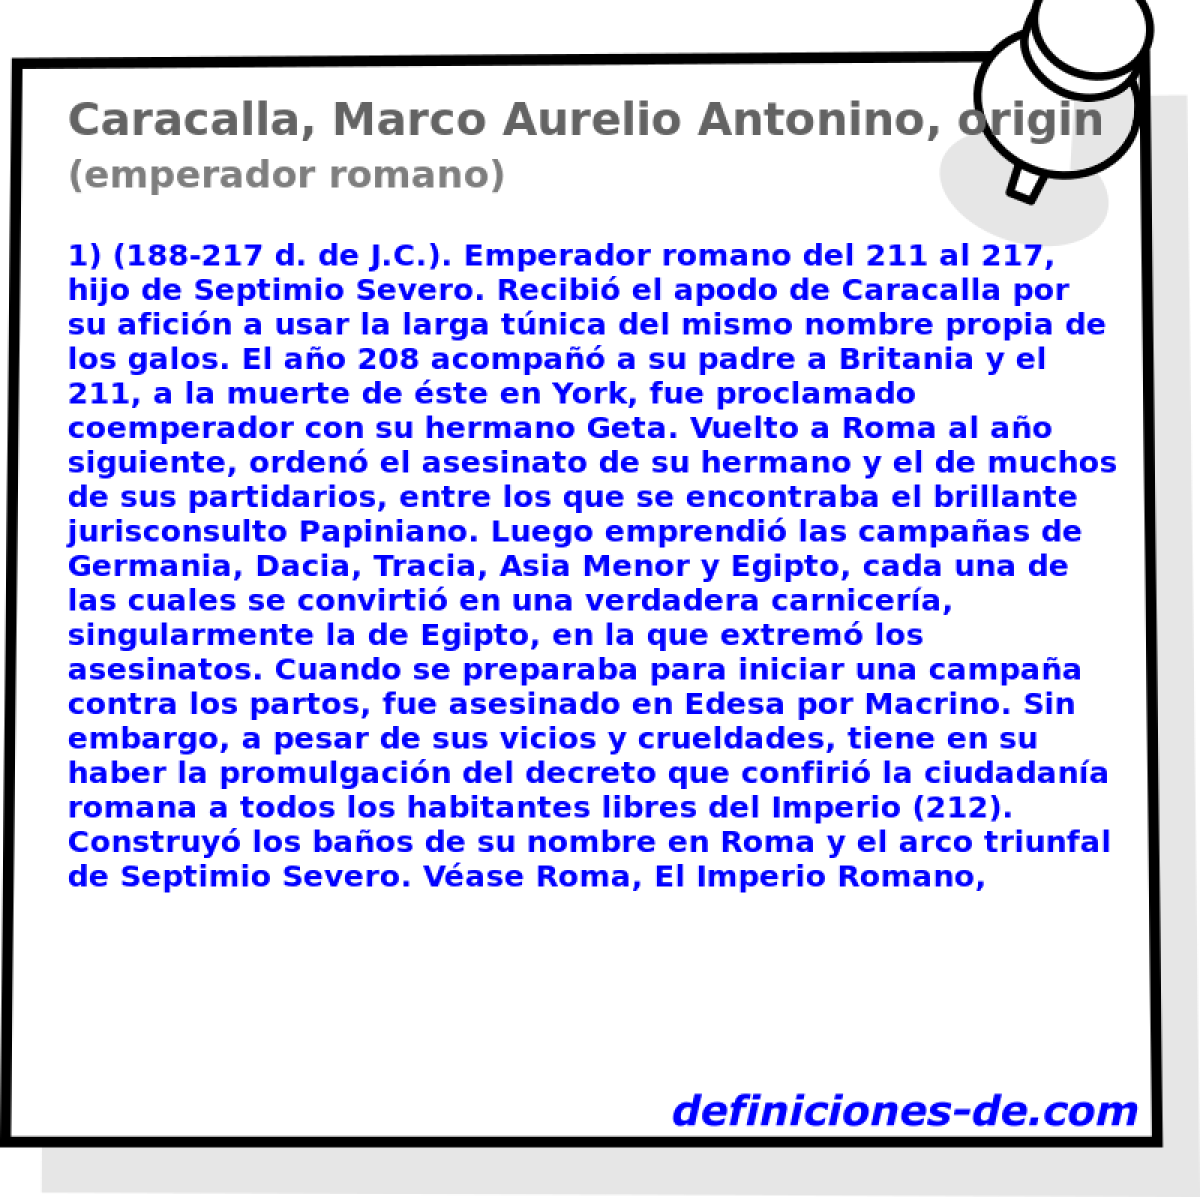 Caracalla, Marco Aurelio Antonino, originariamente Basiano (emperador romano)